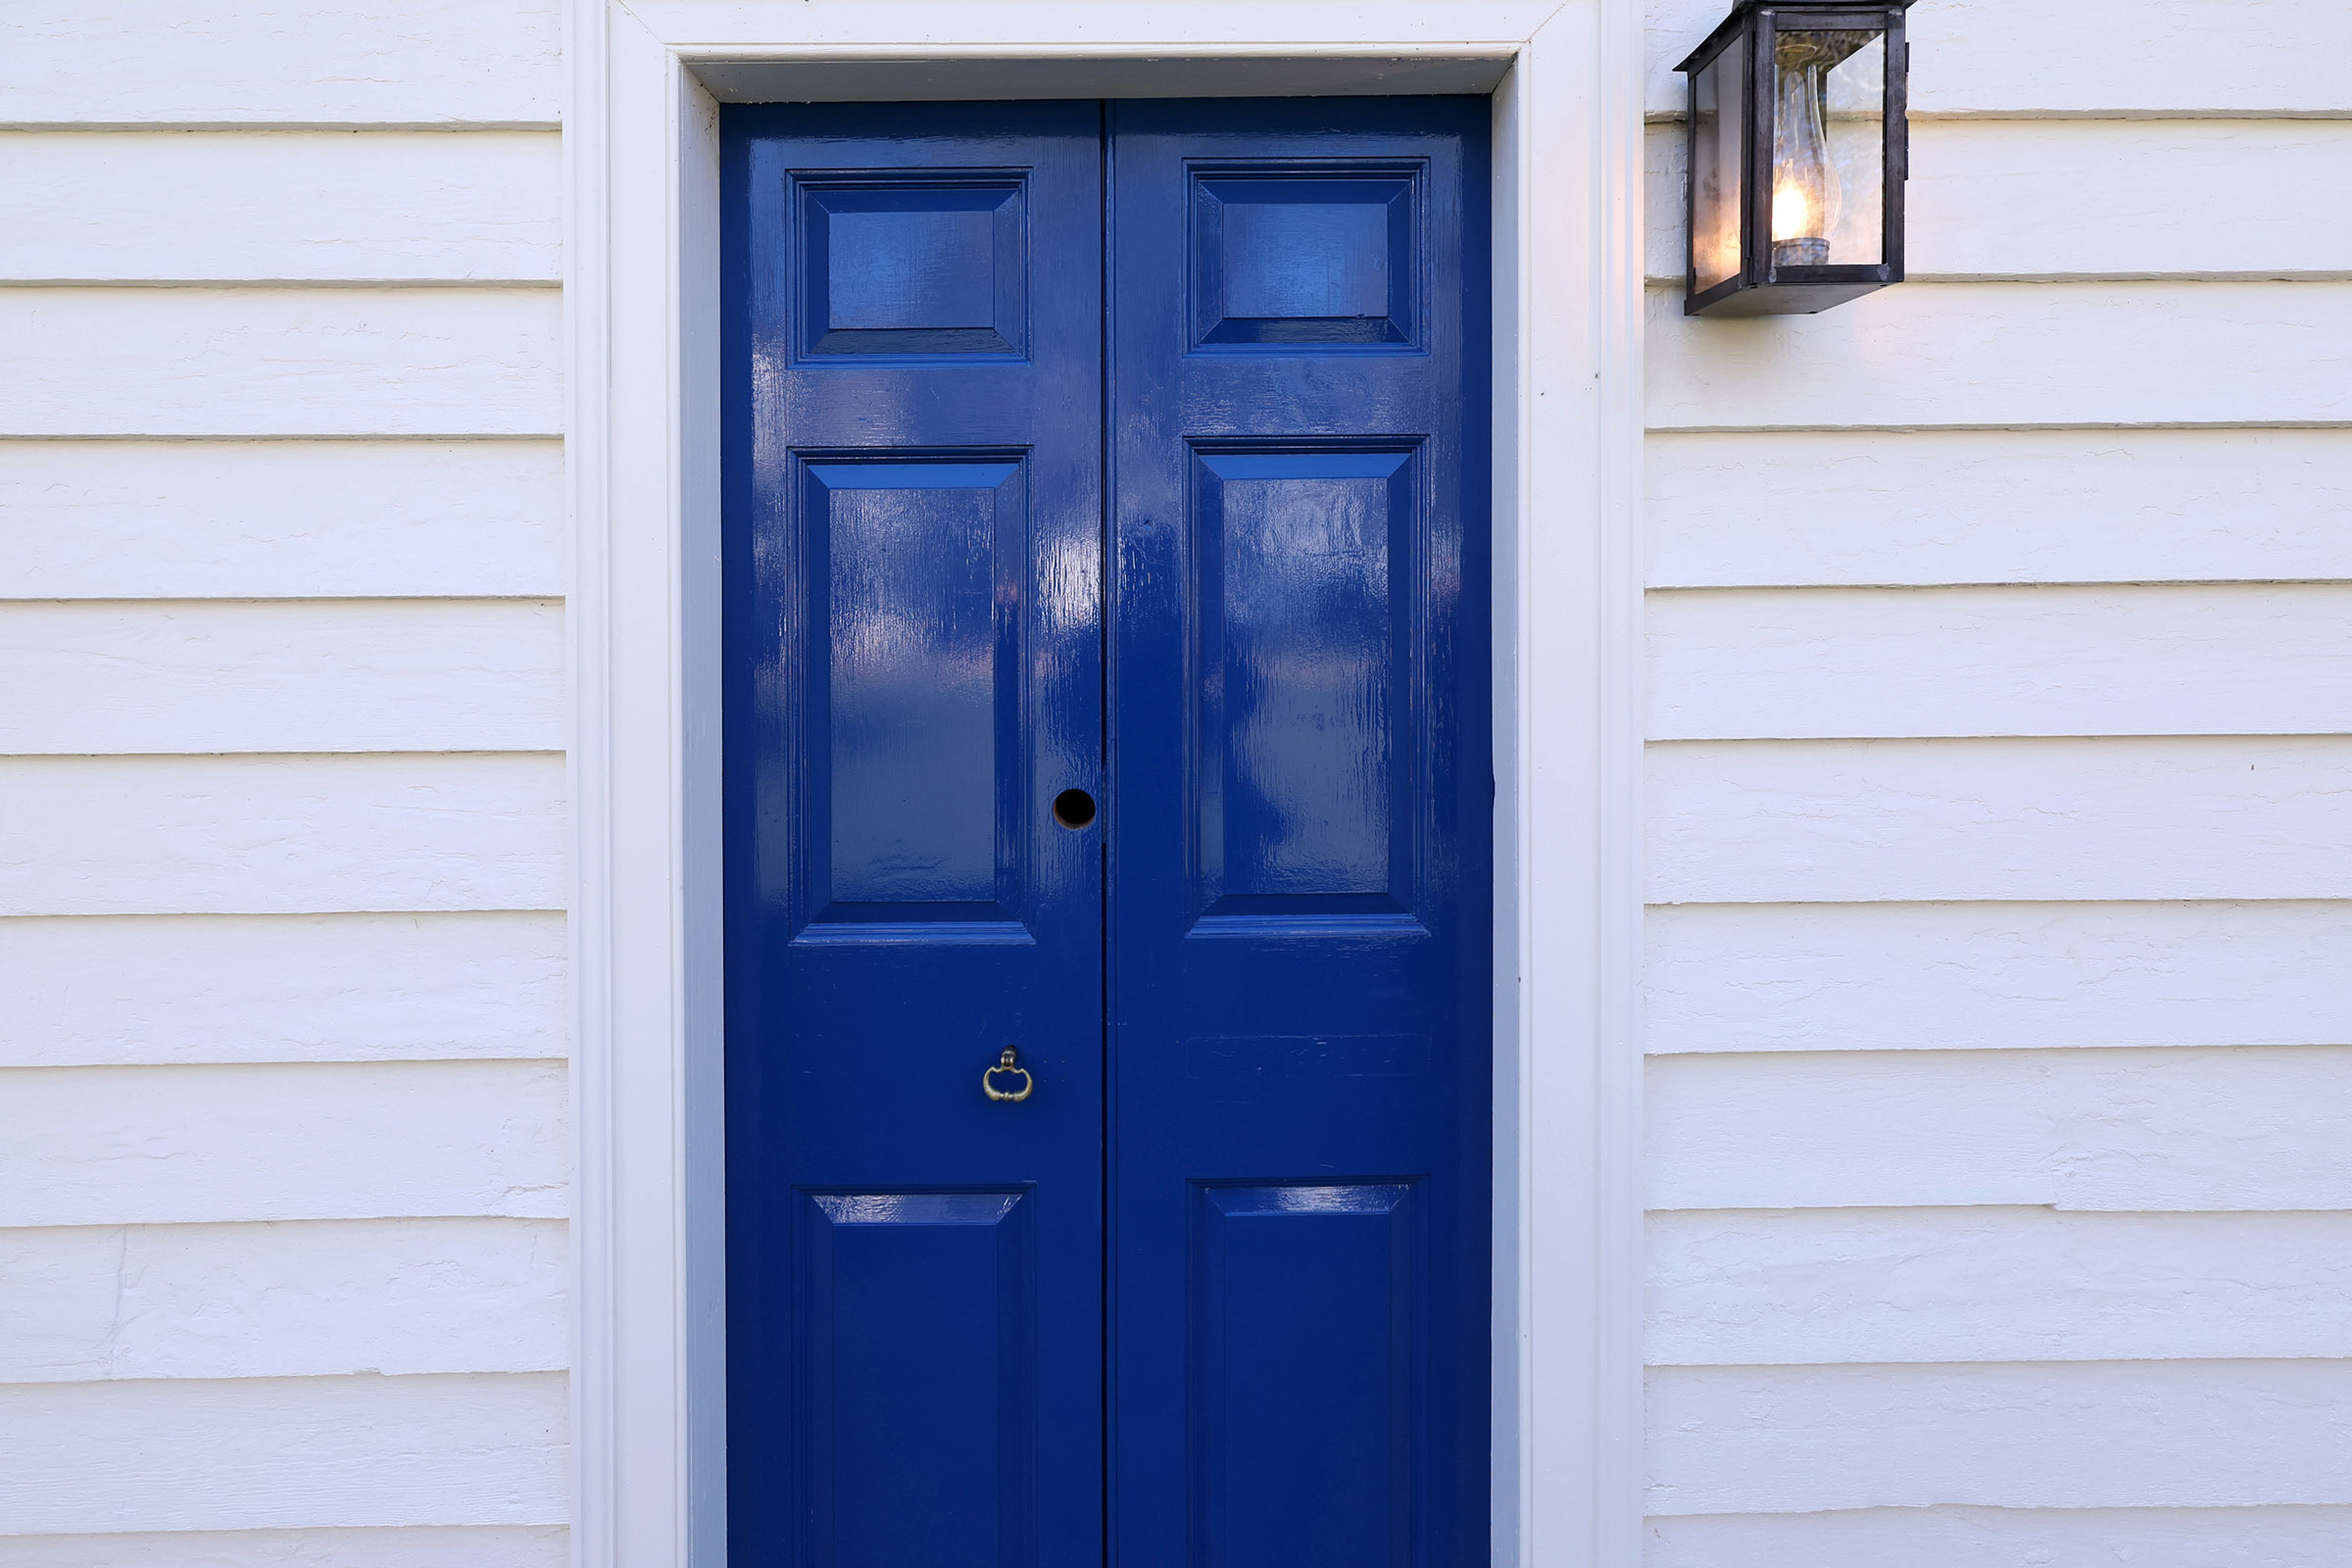 An exterior blue door